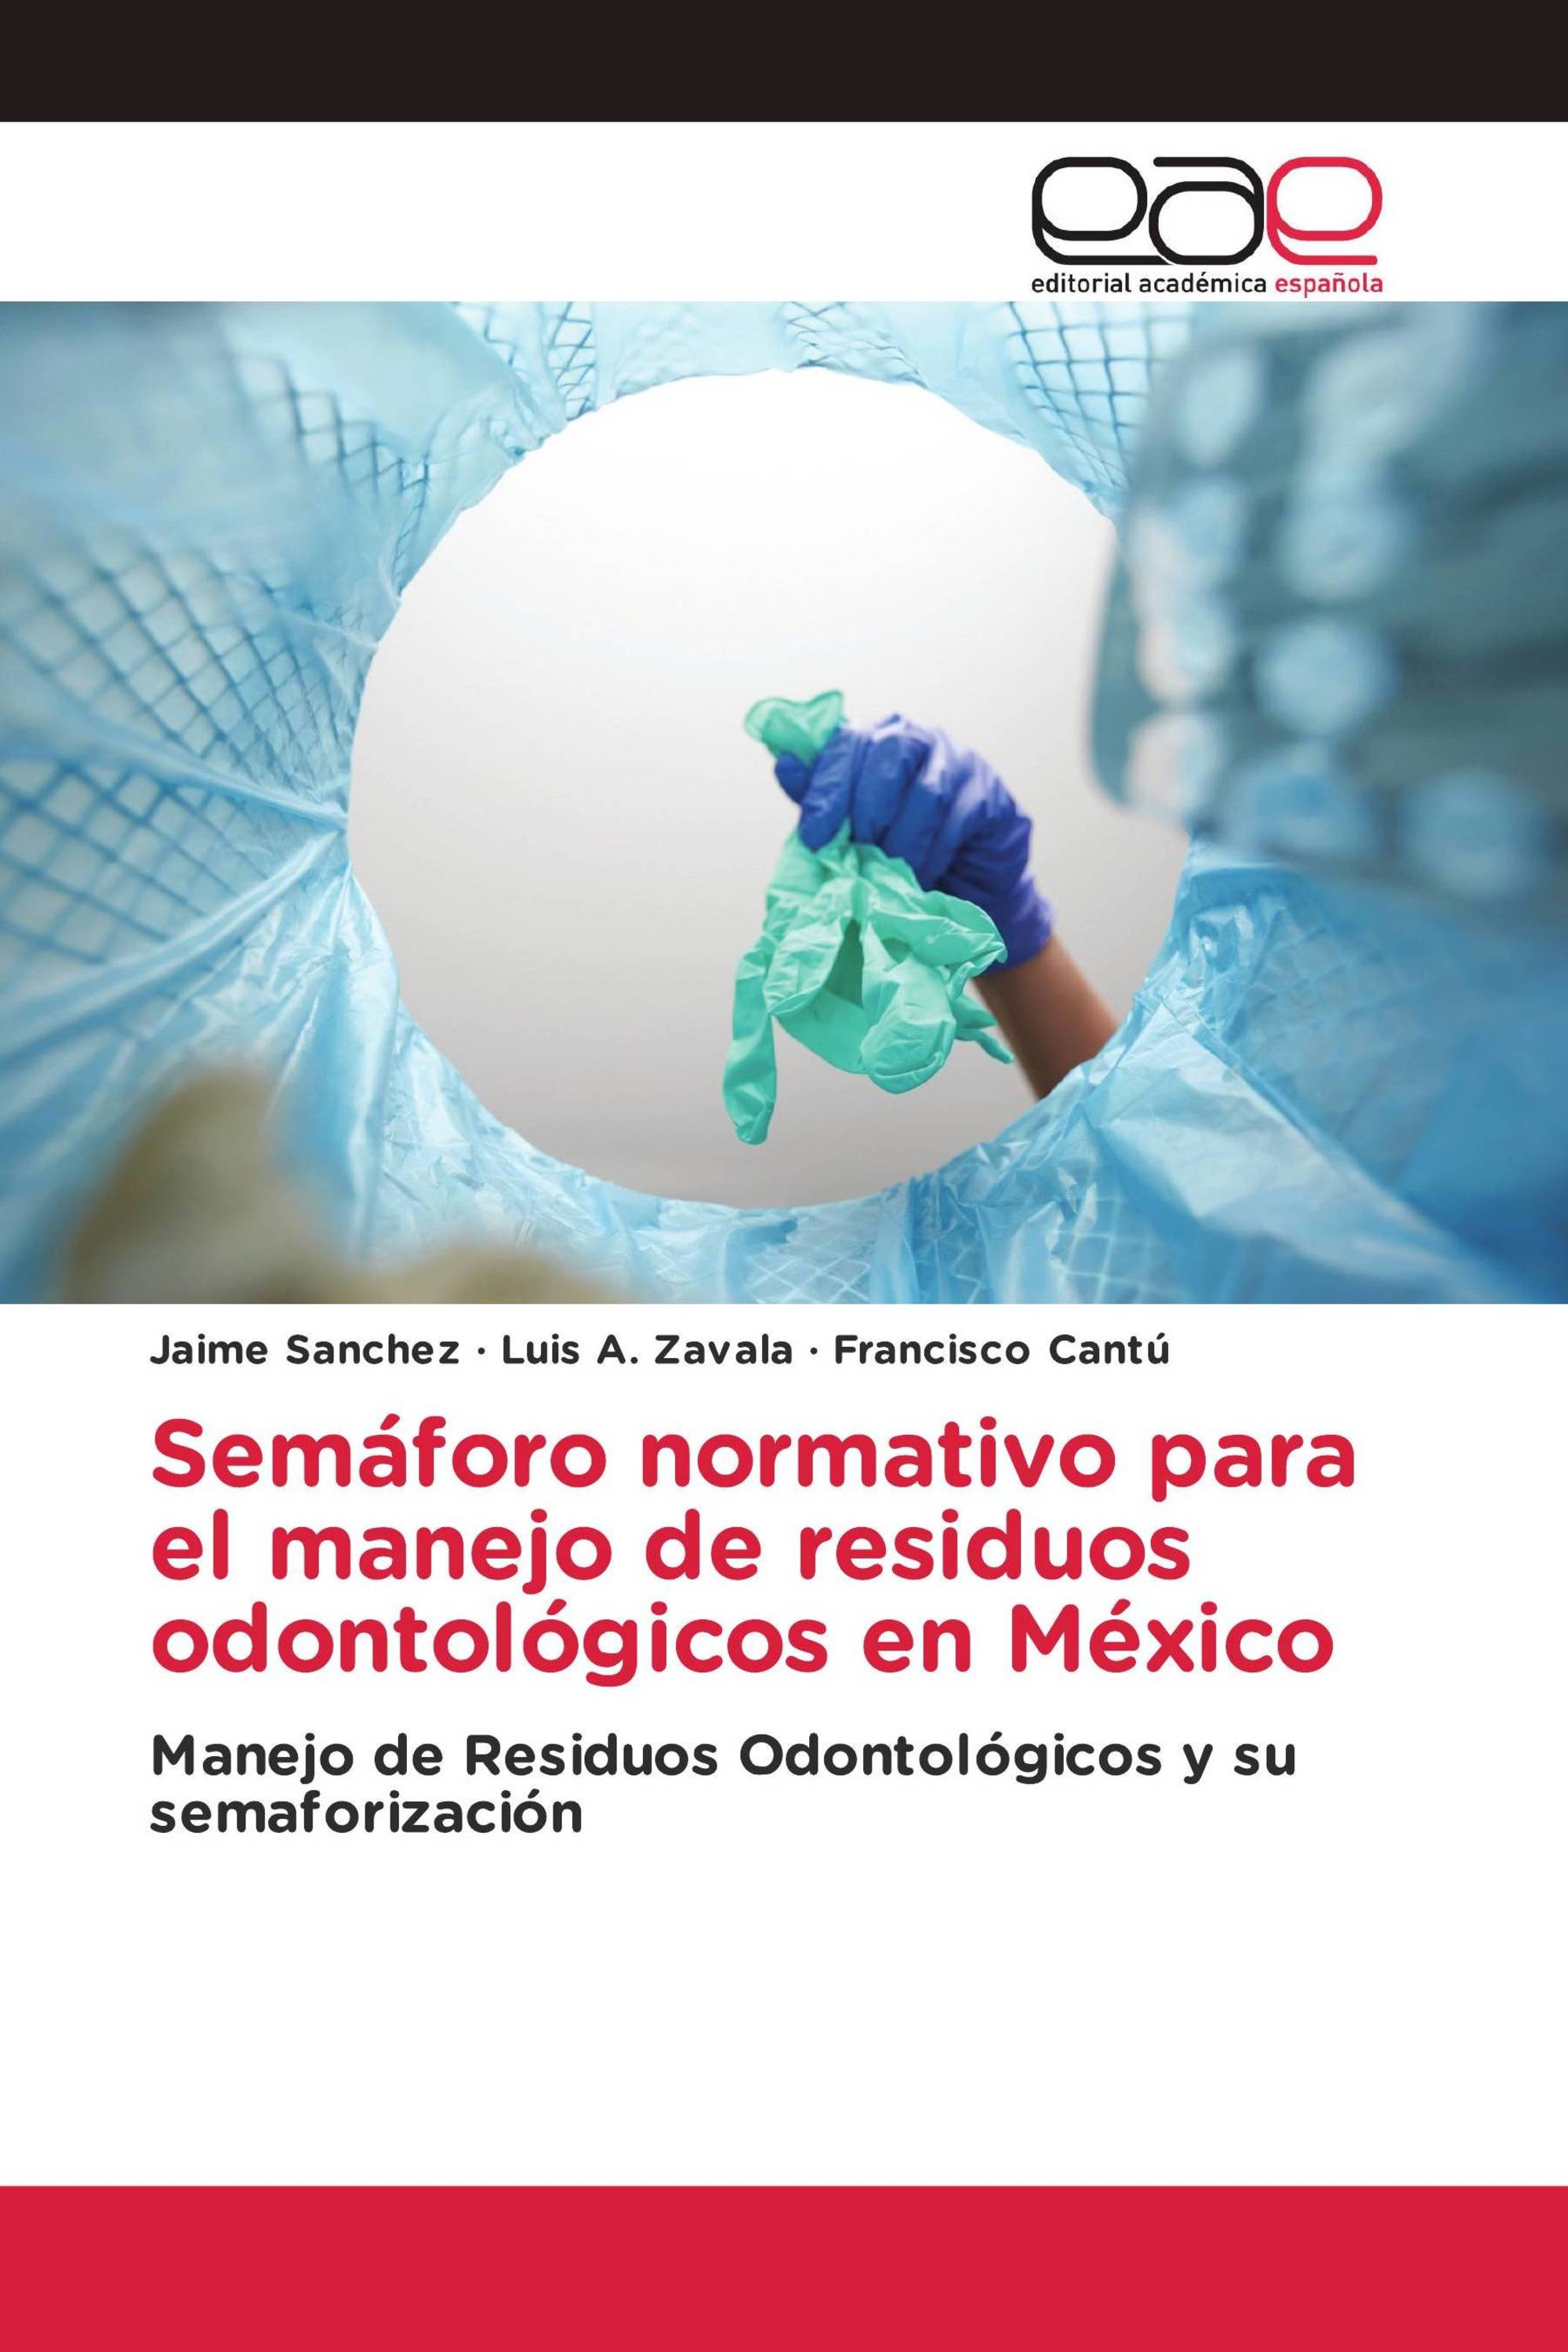 Semáforo normativo para el manejo de residuos odontológicos en México